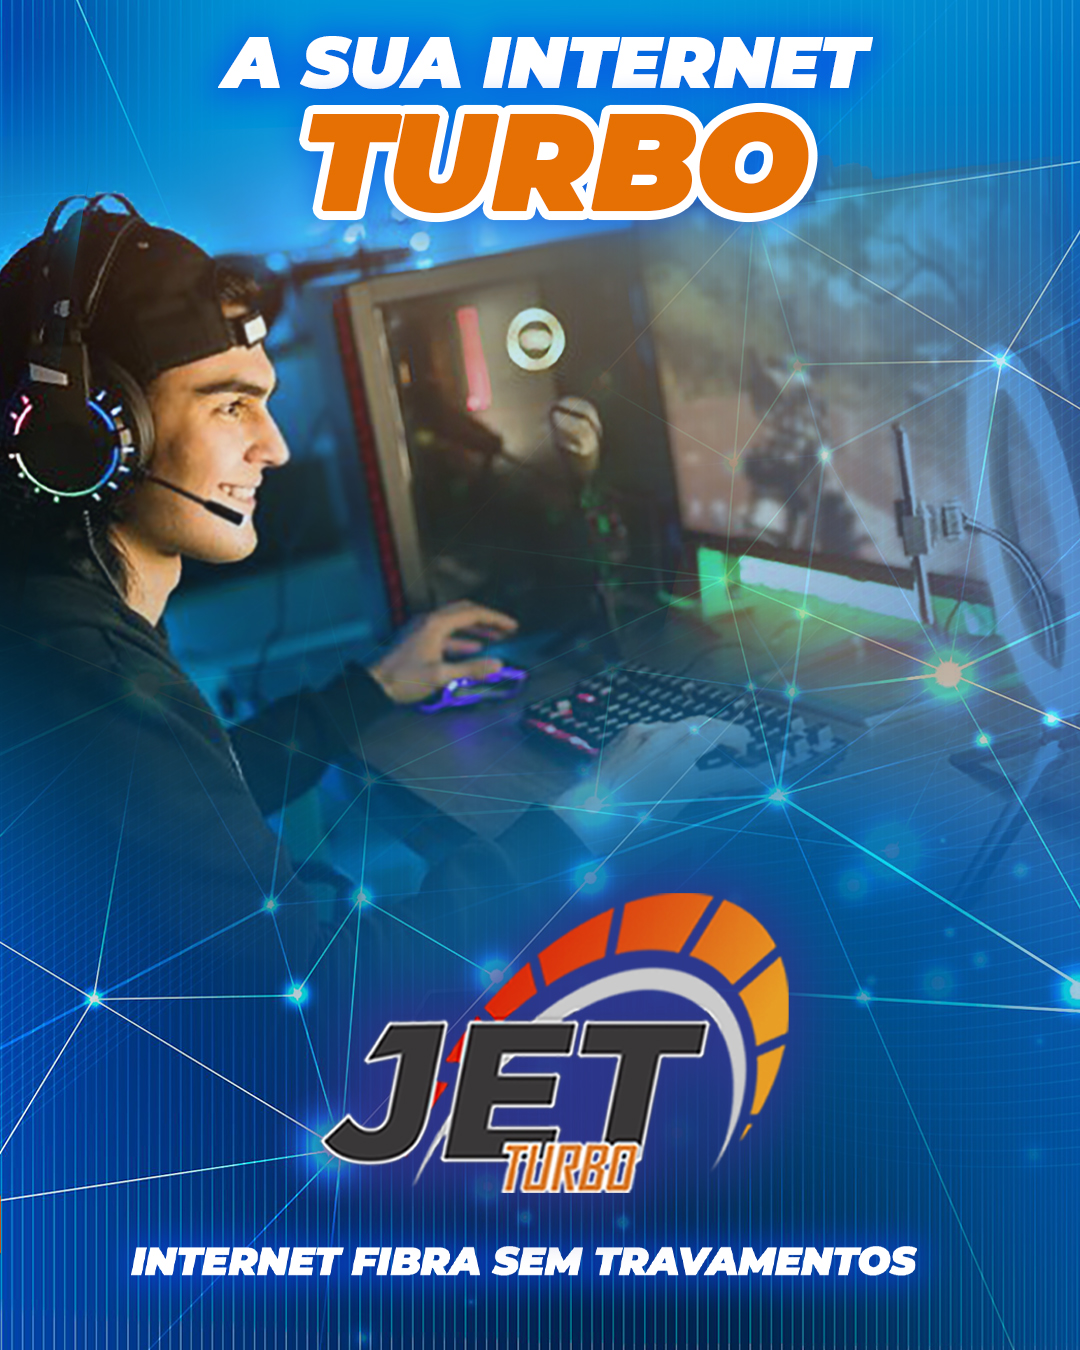 Internet Fibra em Goiânia Jet Turbo para jogos com alta velocidade e internet sem travamento